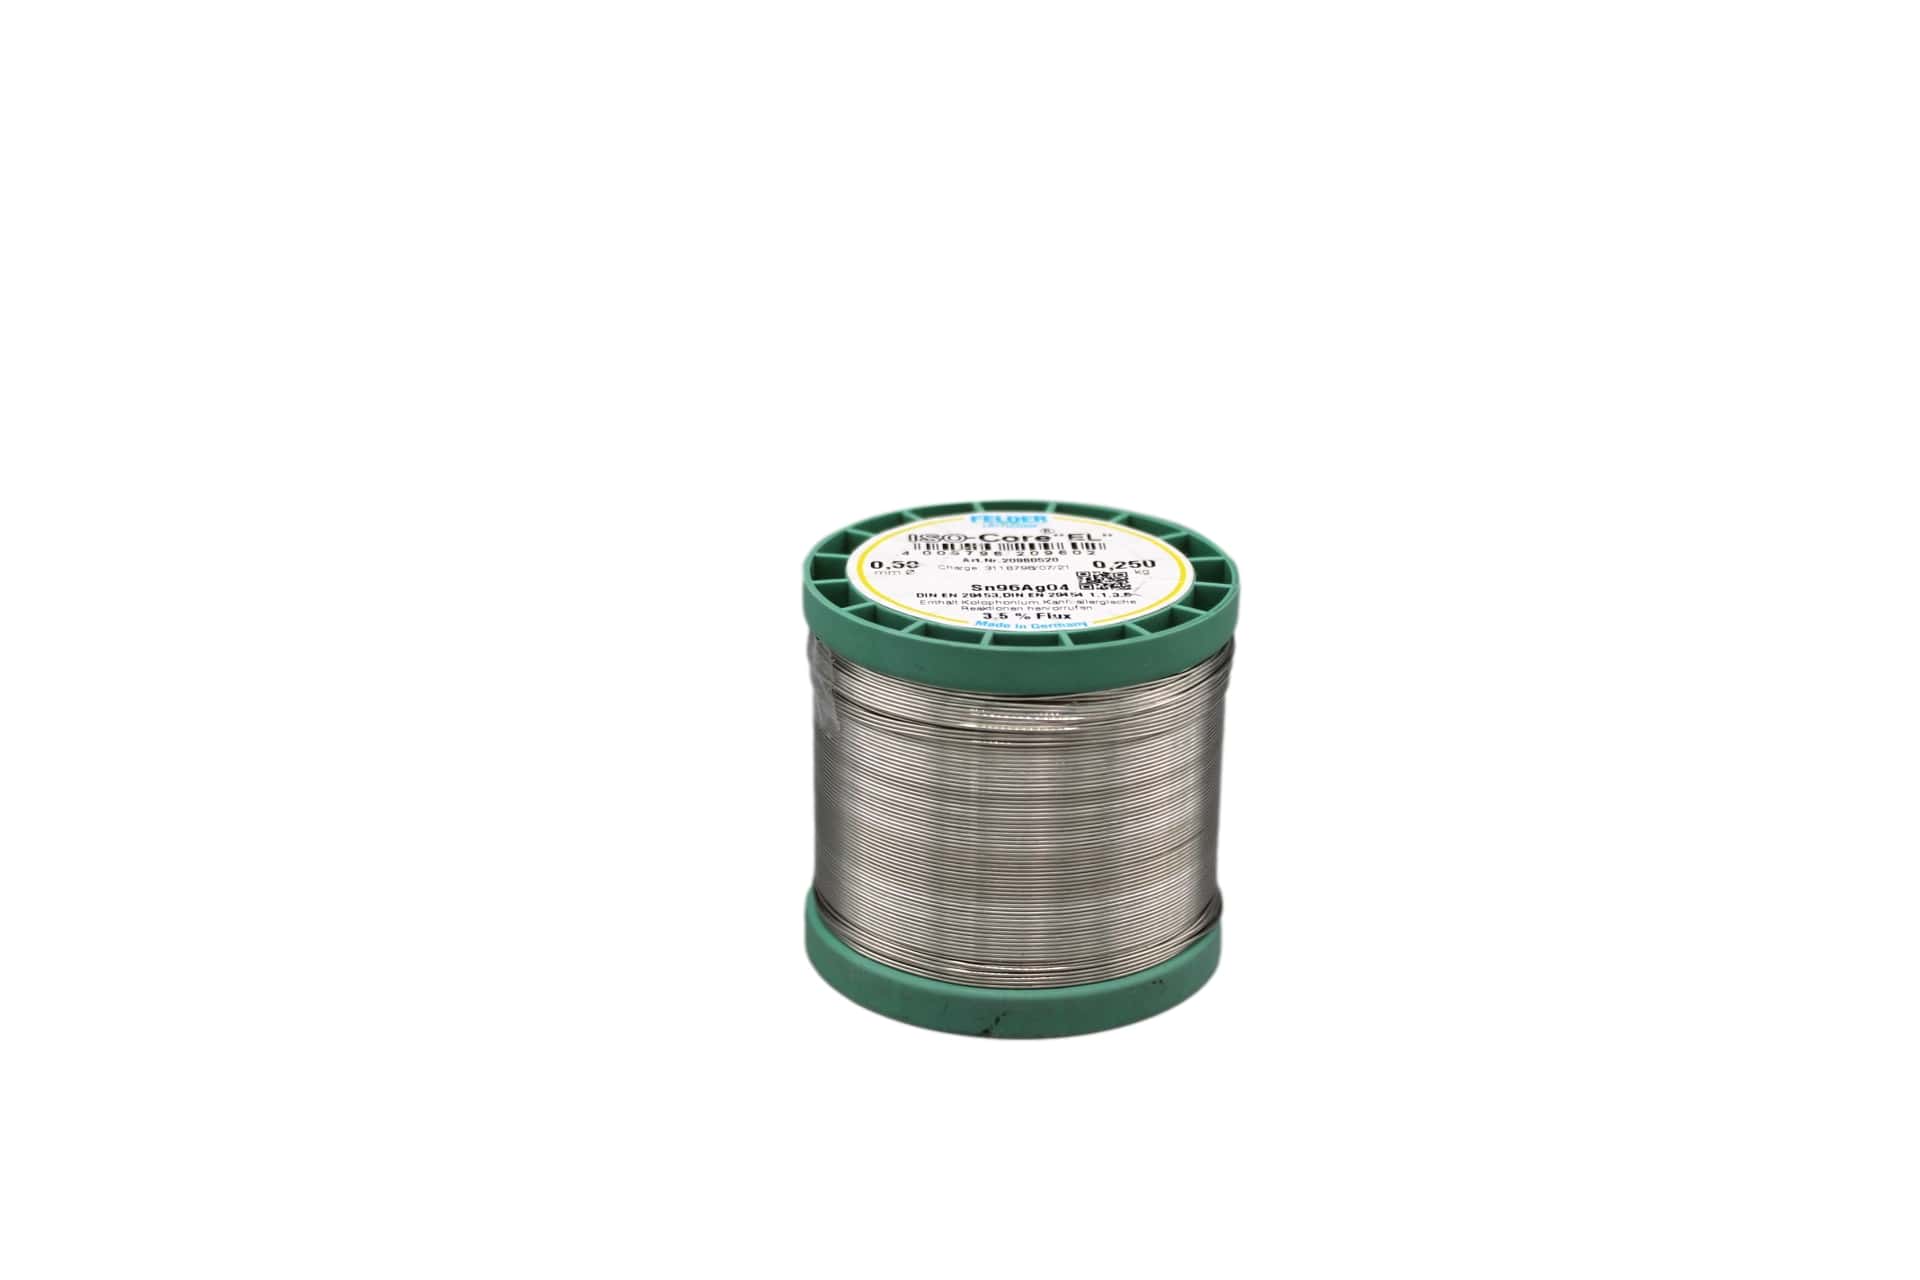 20960520 Felder solder wire, no-clean, lead-free, Sn96Ag4, 0.5 mm, 250g, roll